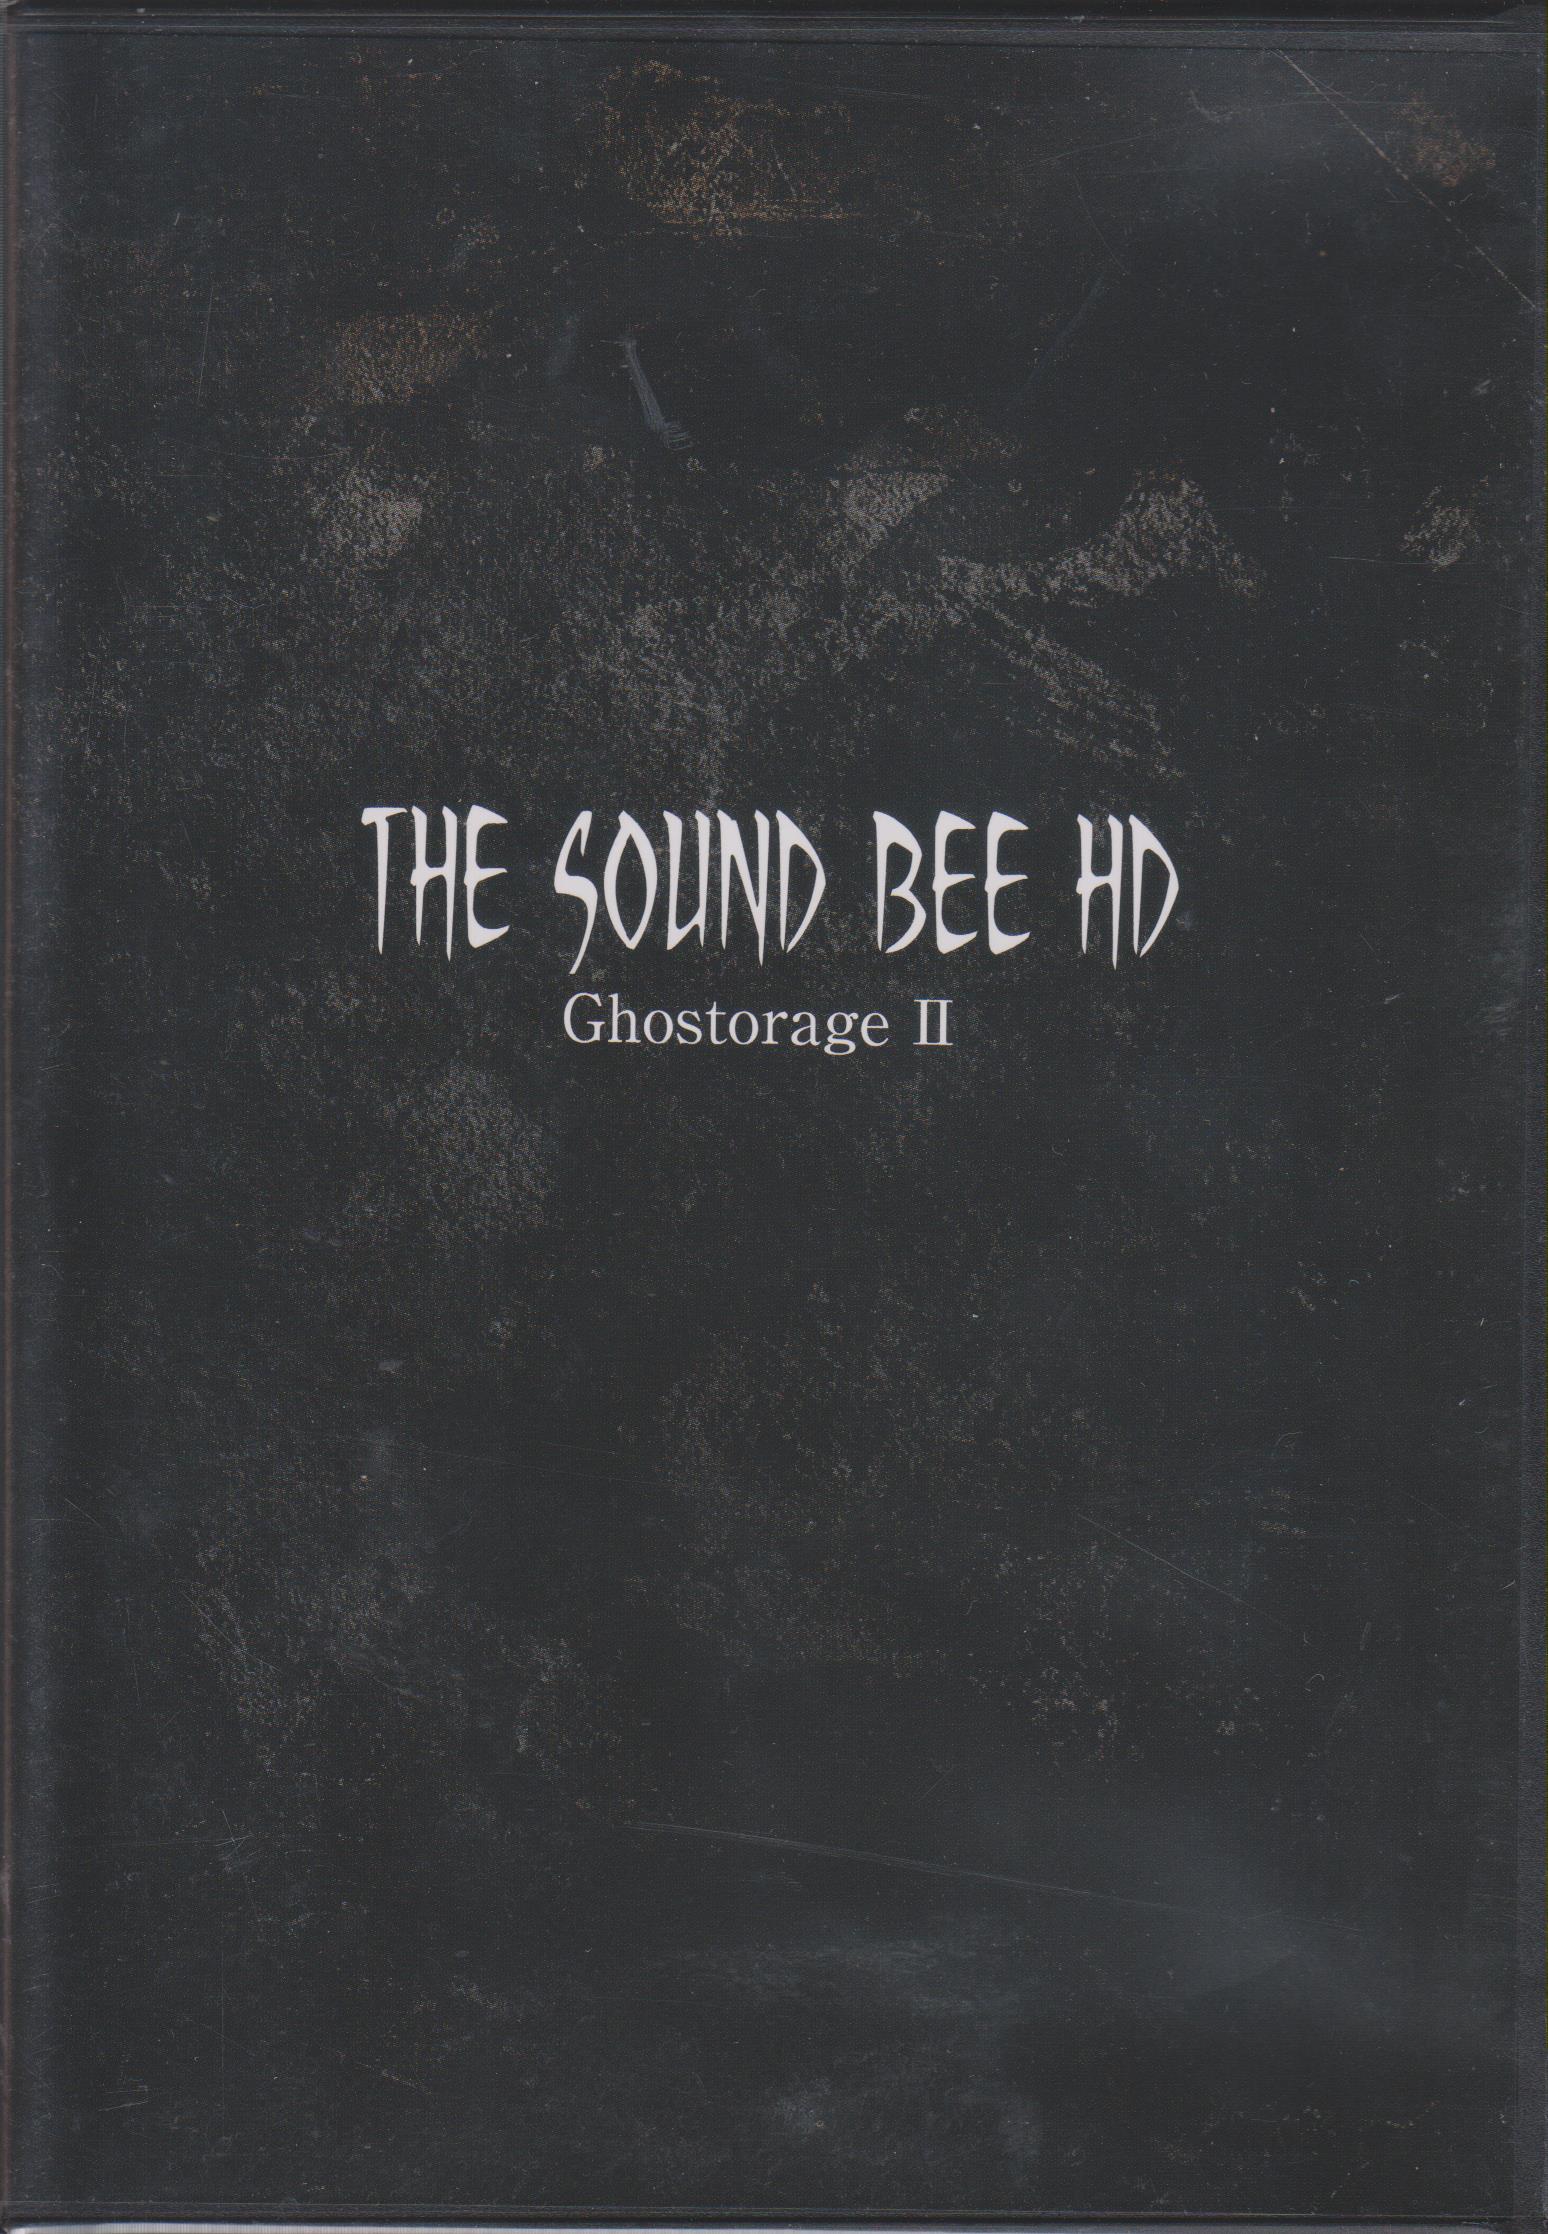 ザサウンドビーエイチディー の DVD Ghostorage Ⅱライブ会場＆通販限定盤